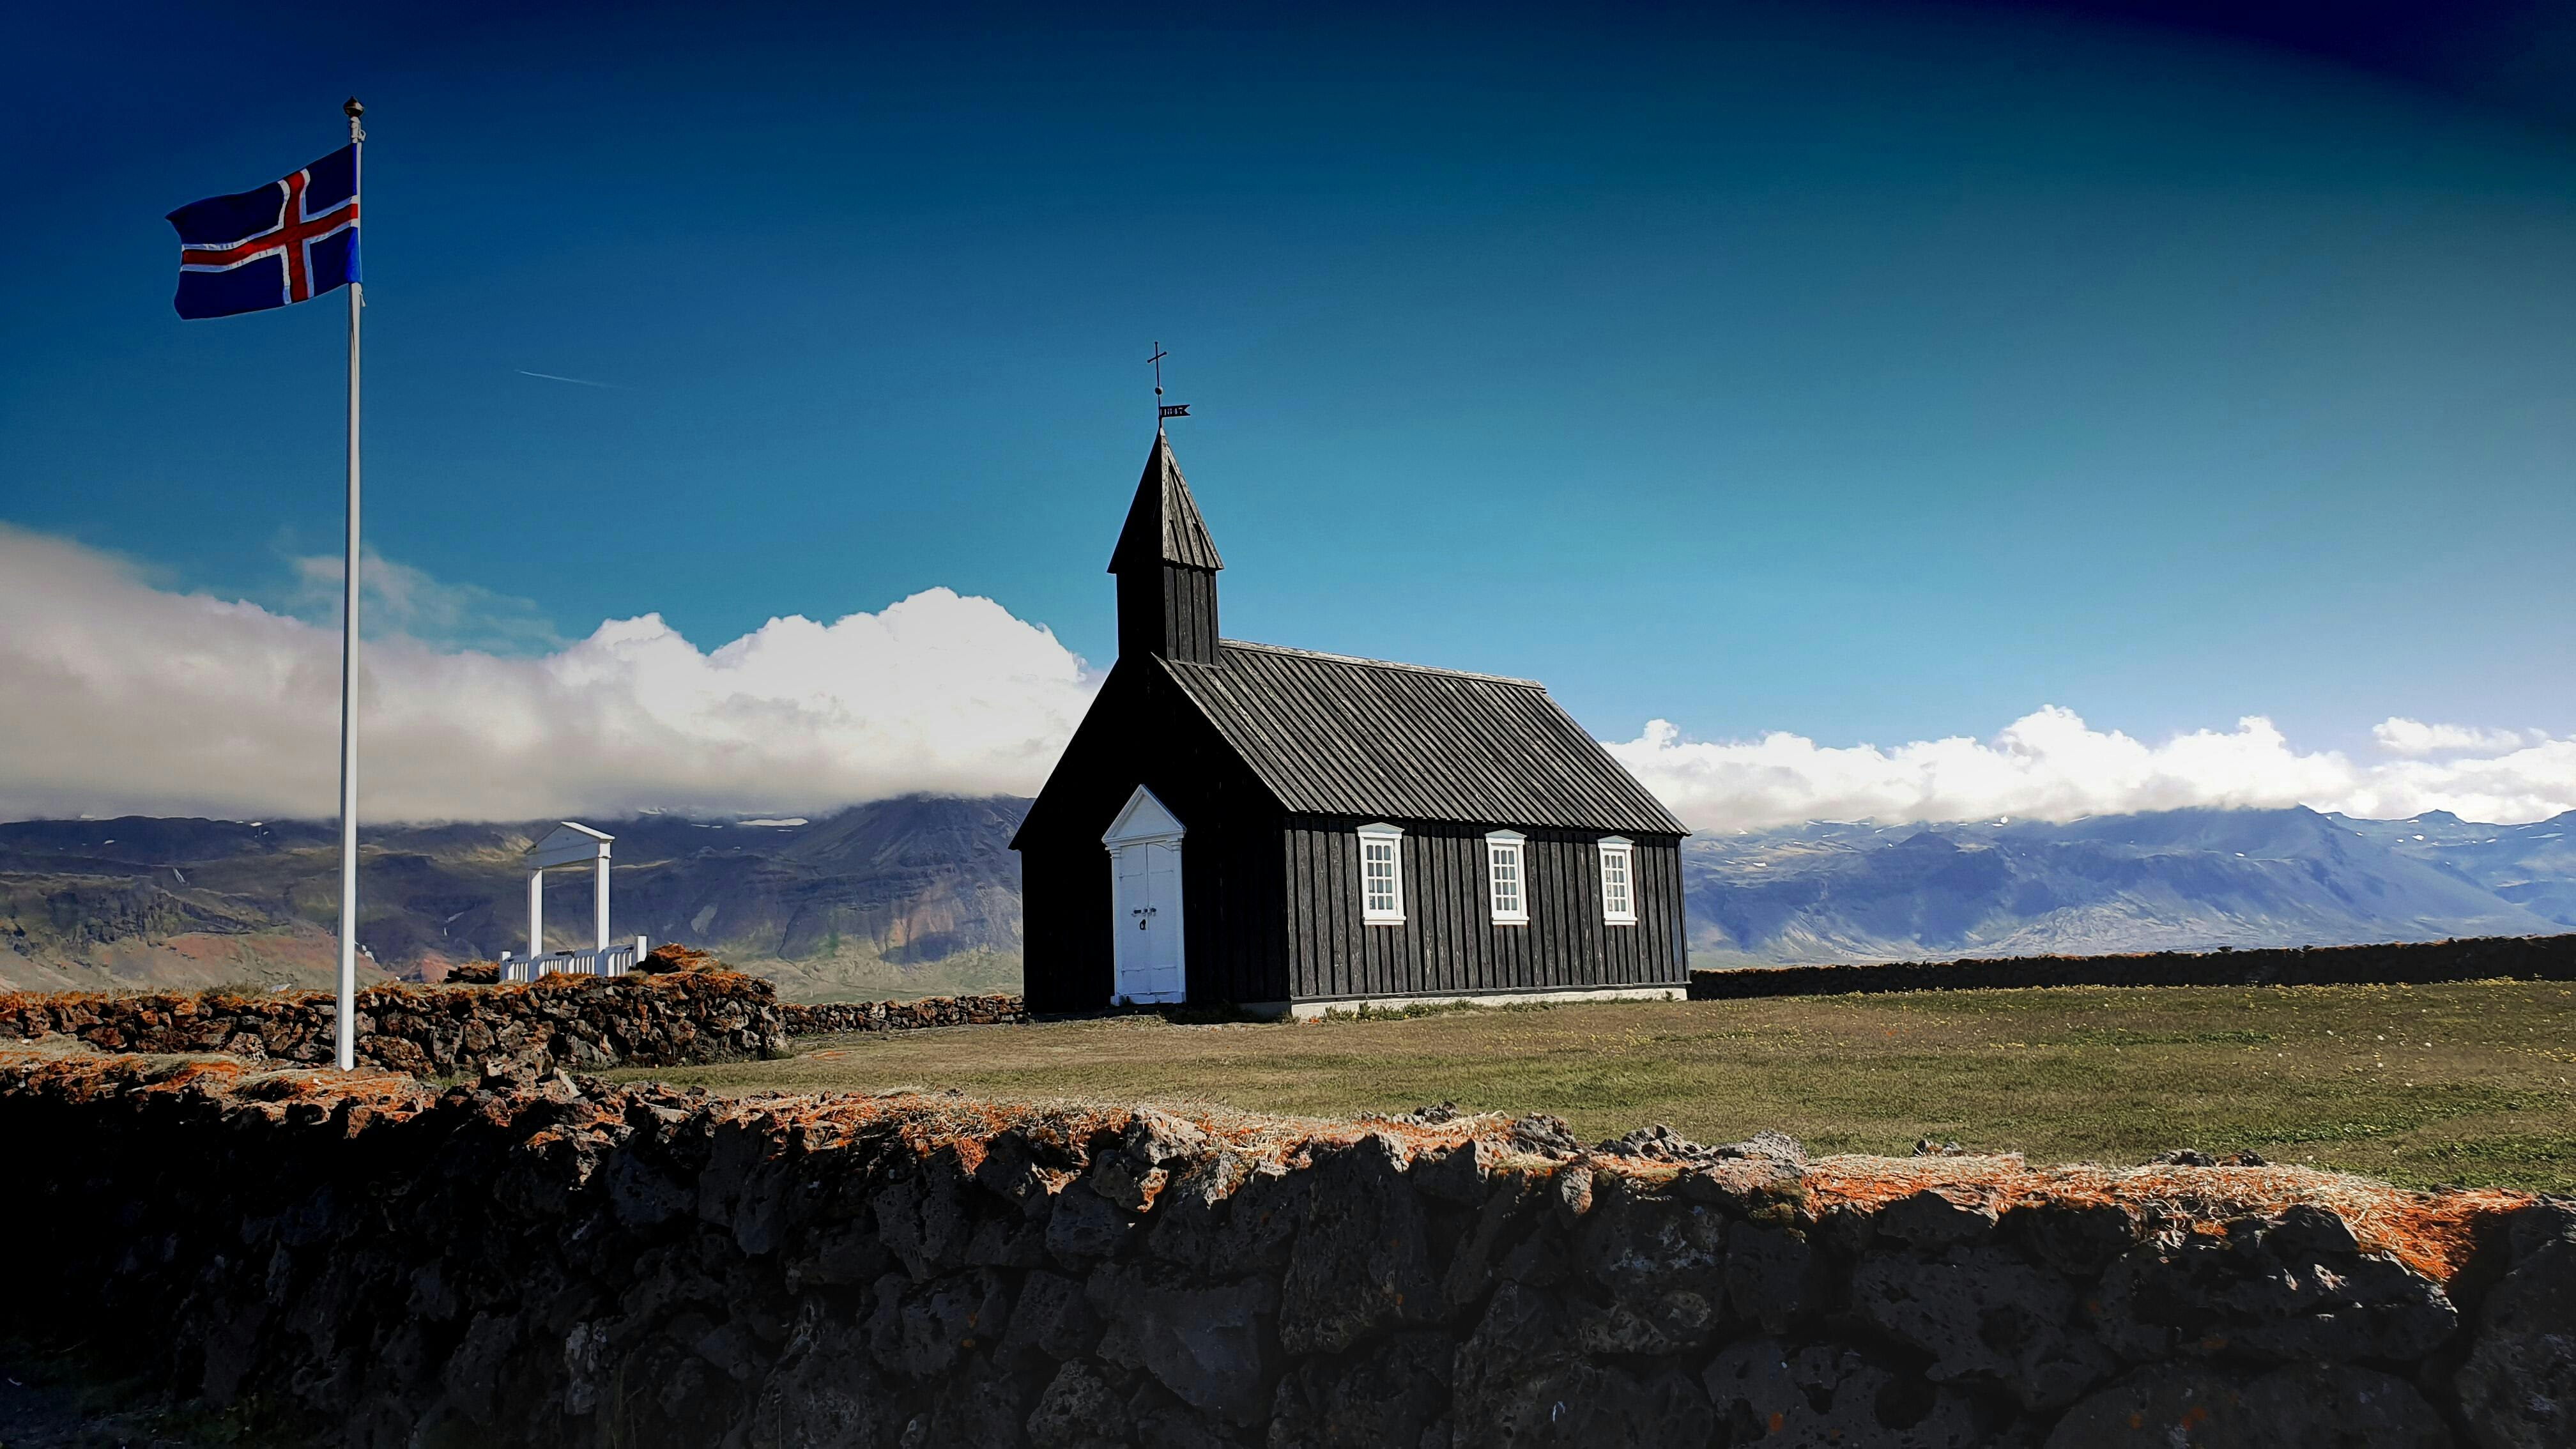 Búðir church with the Icelandic flag